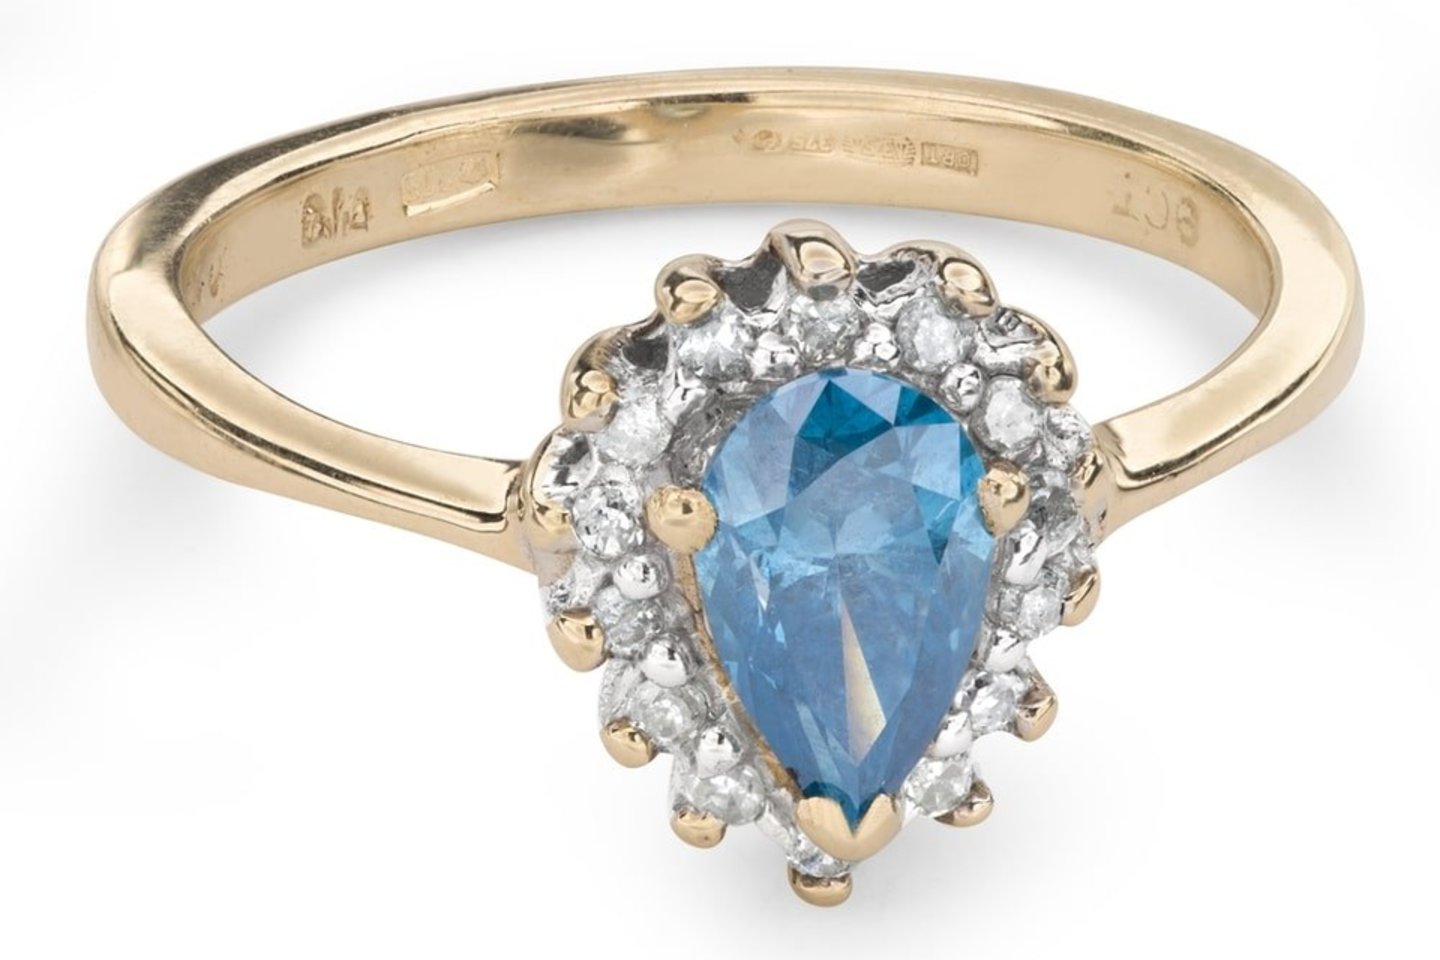 Sužadėtuvių žiedų istorija prasidėjo labai seniai, tačiau jų populiarumas stipriai išaugo, kai žiedai buvo pradėti reklamuoti.<br>ziedelis.lt nuotr.